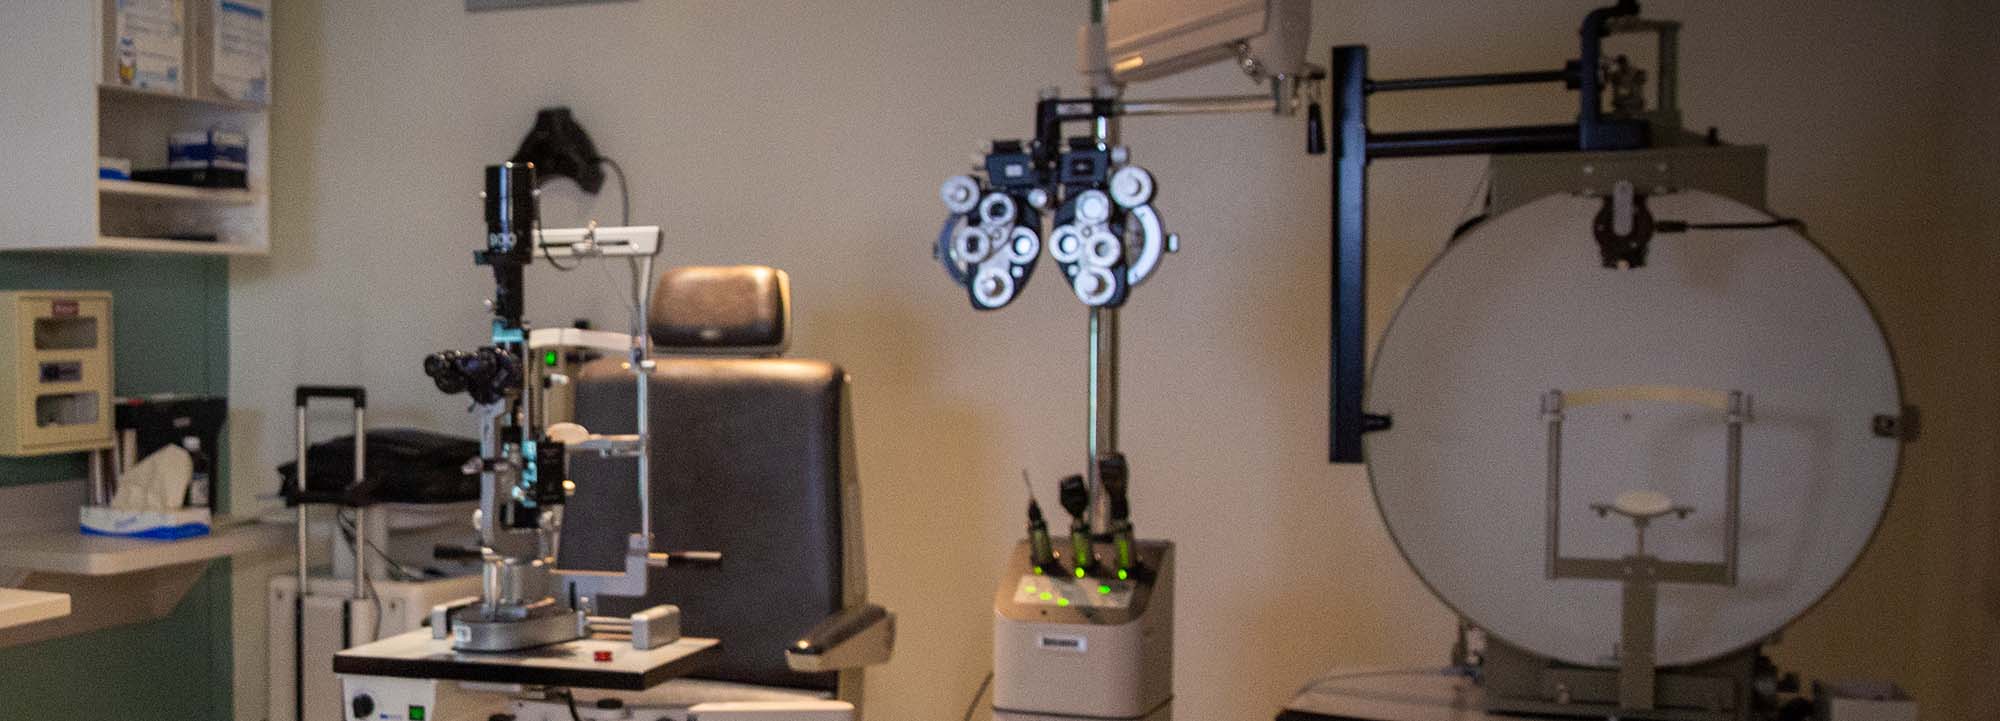 眼科クリニックの眼科機器